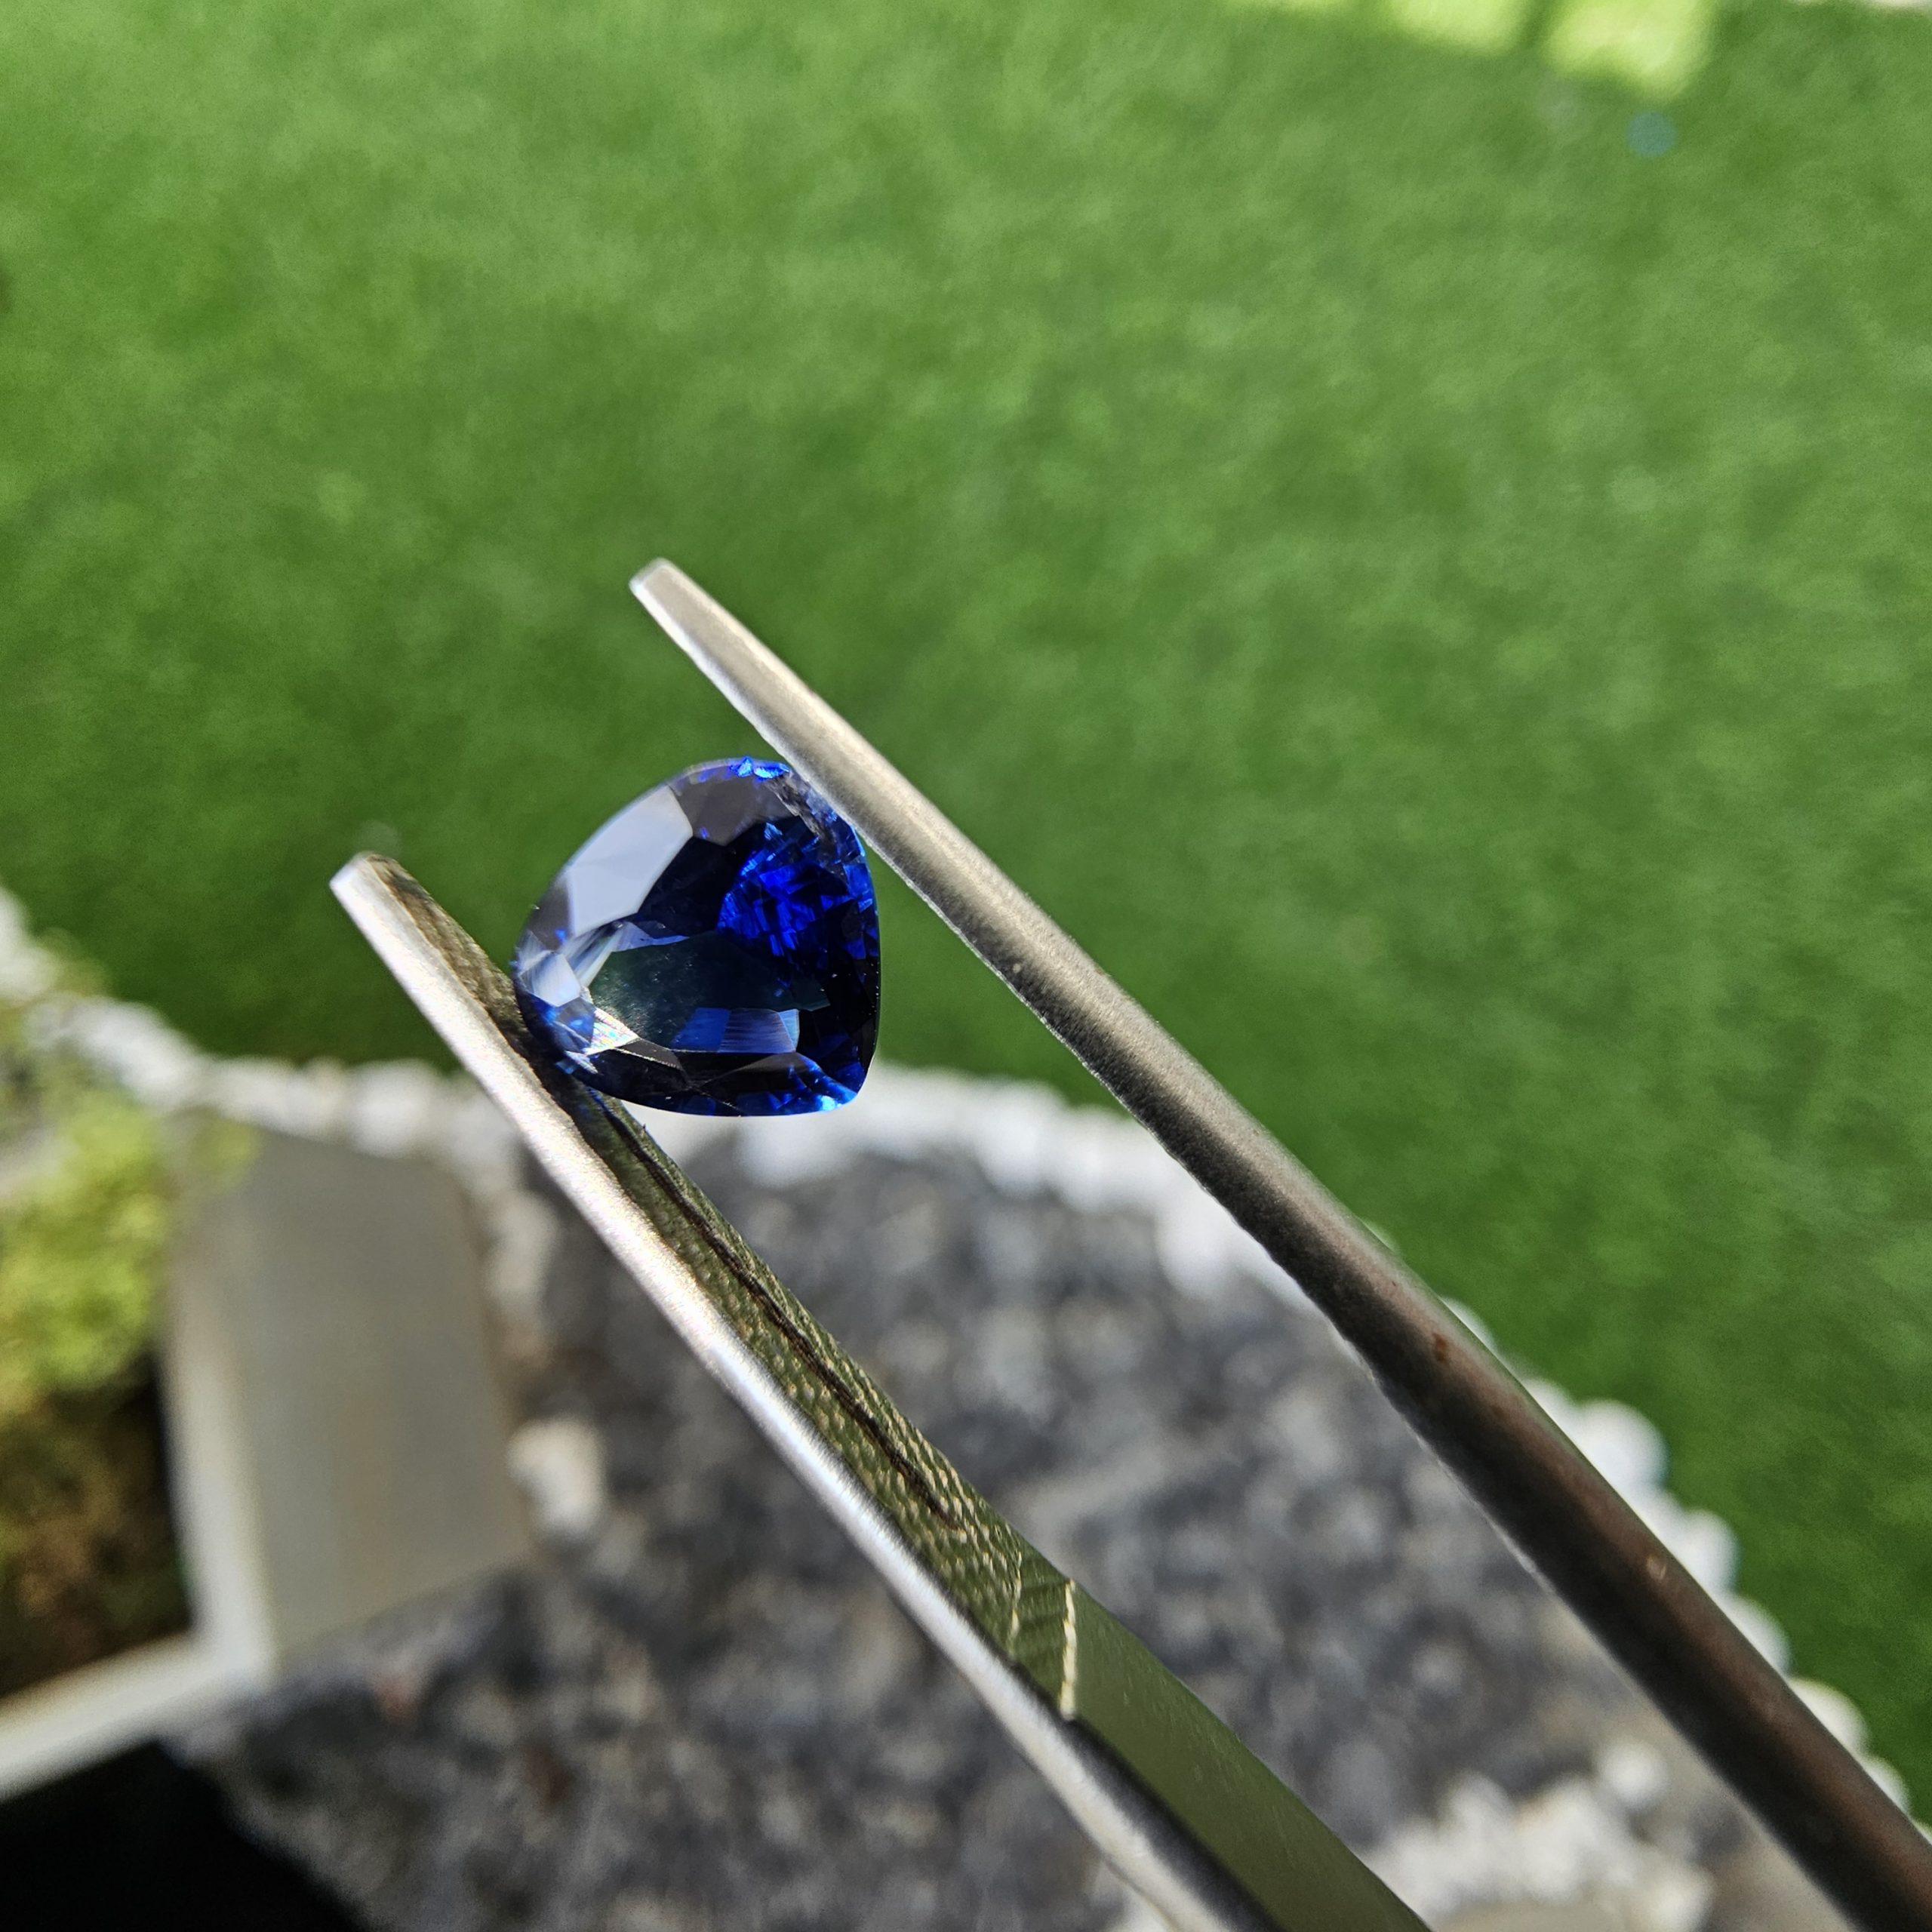 Ceylon Blue Sapphire 1.05carat